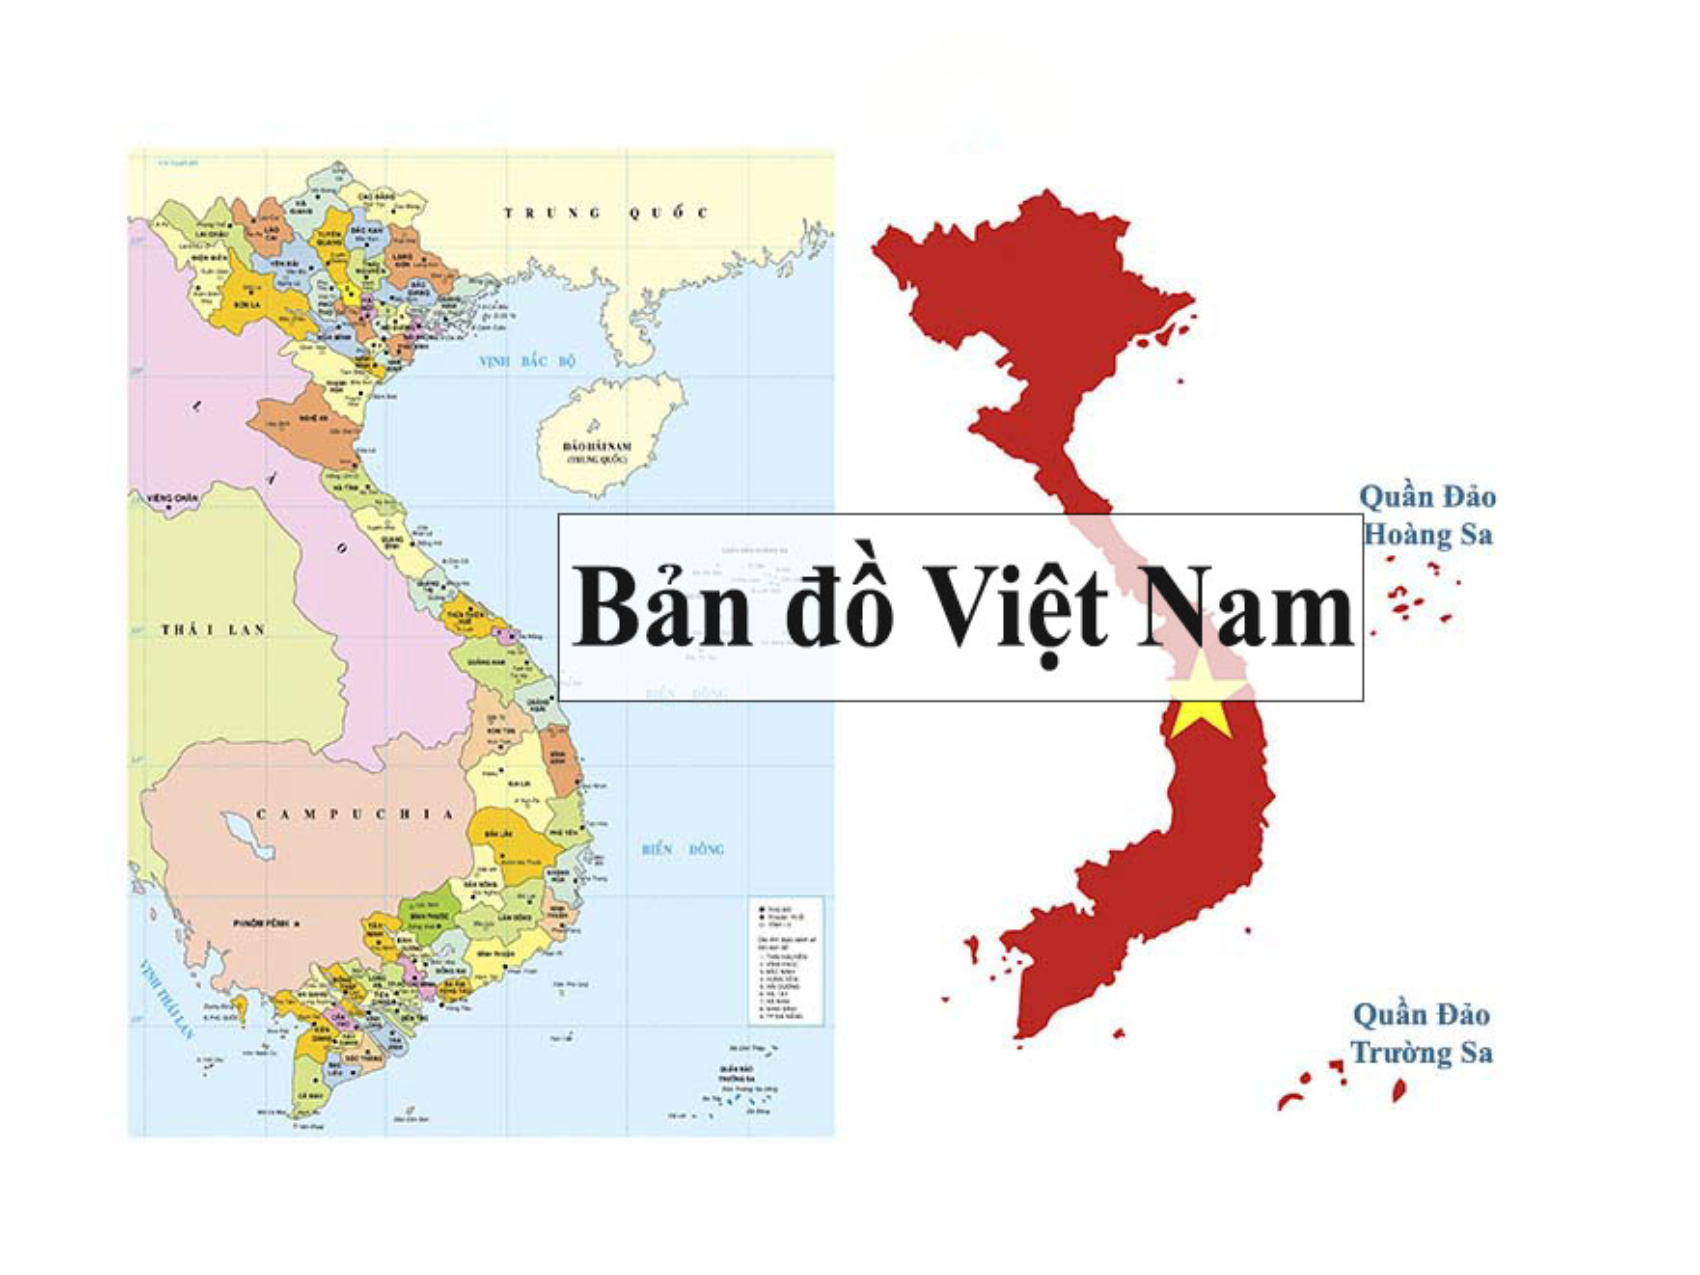 Bản đồ Việt Nam là gì?